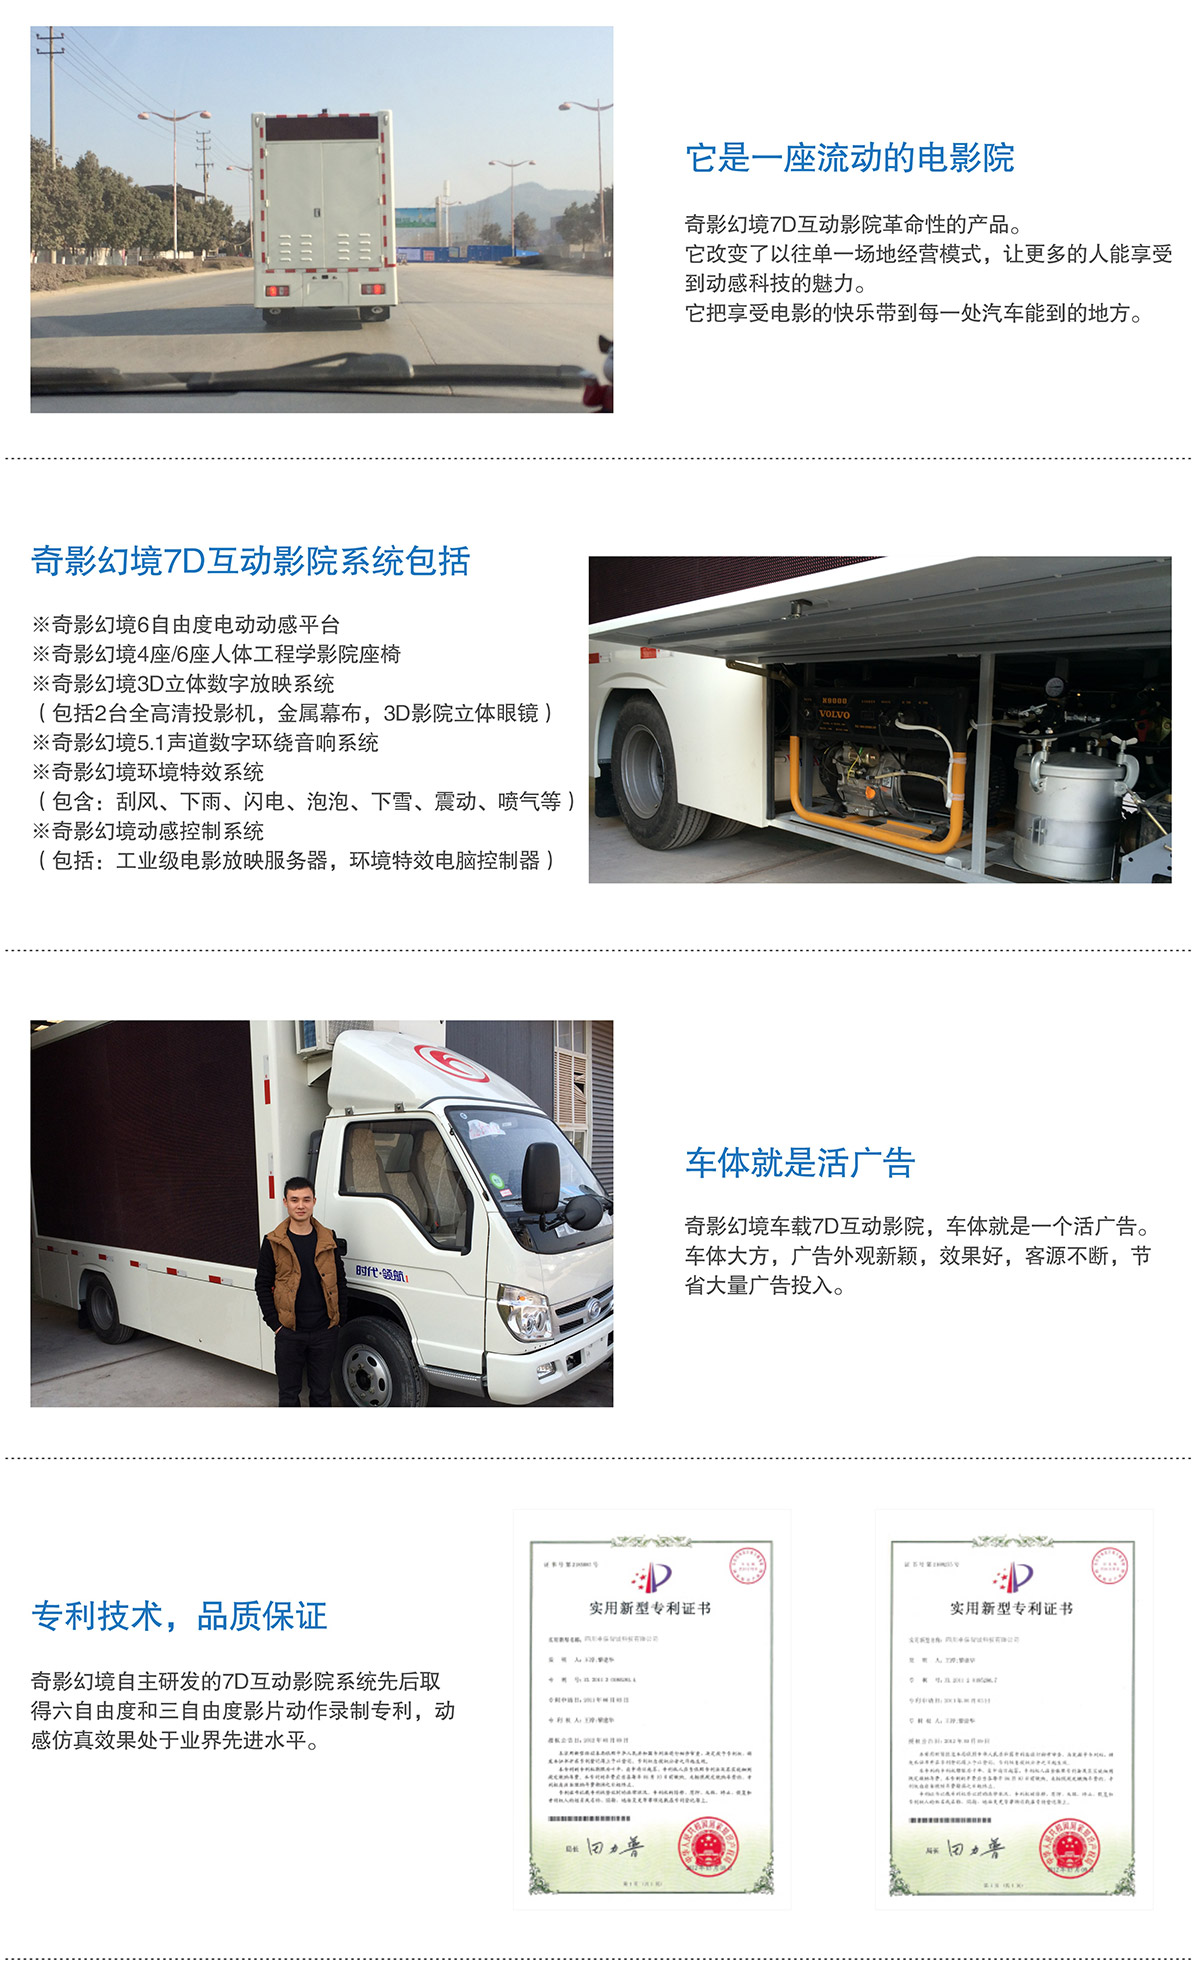 重庆7D互动电影车就是活广告.jpg